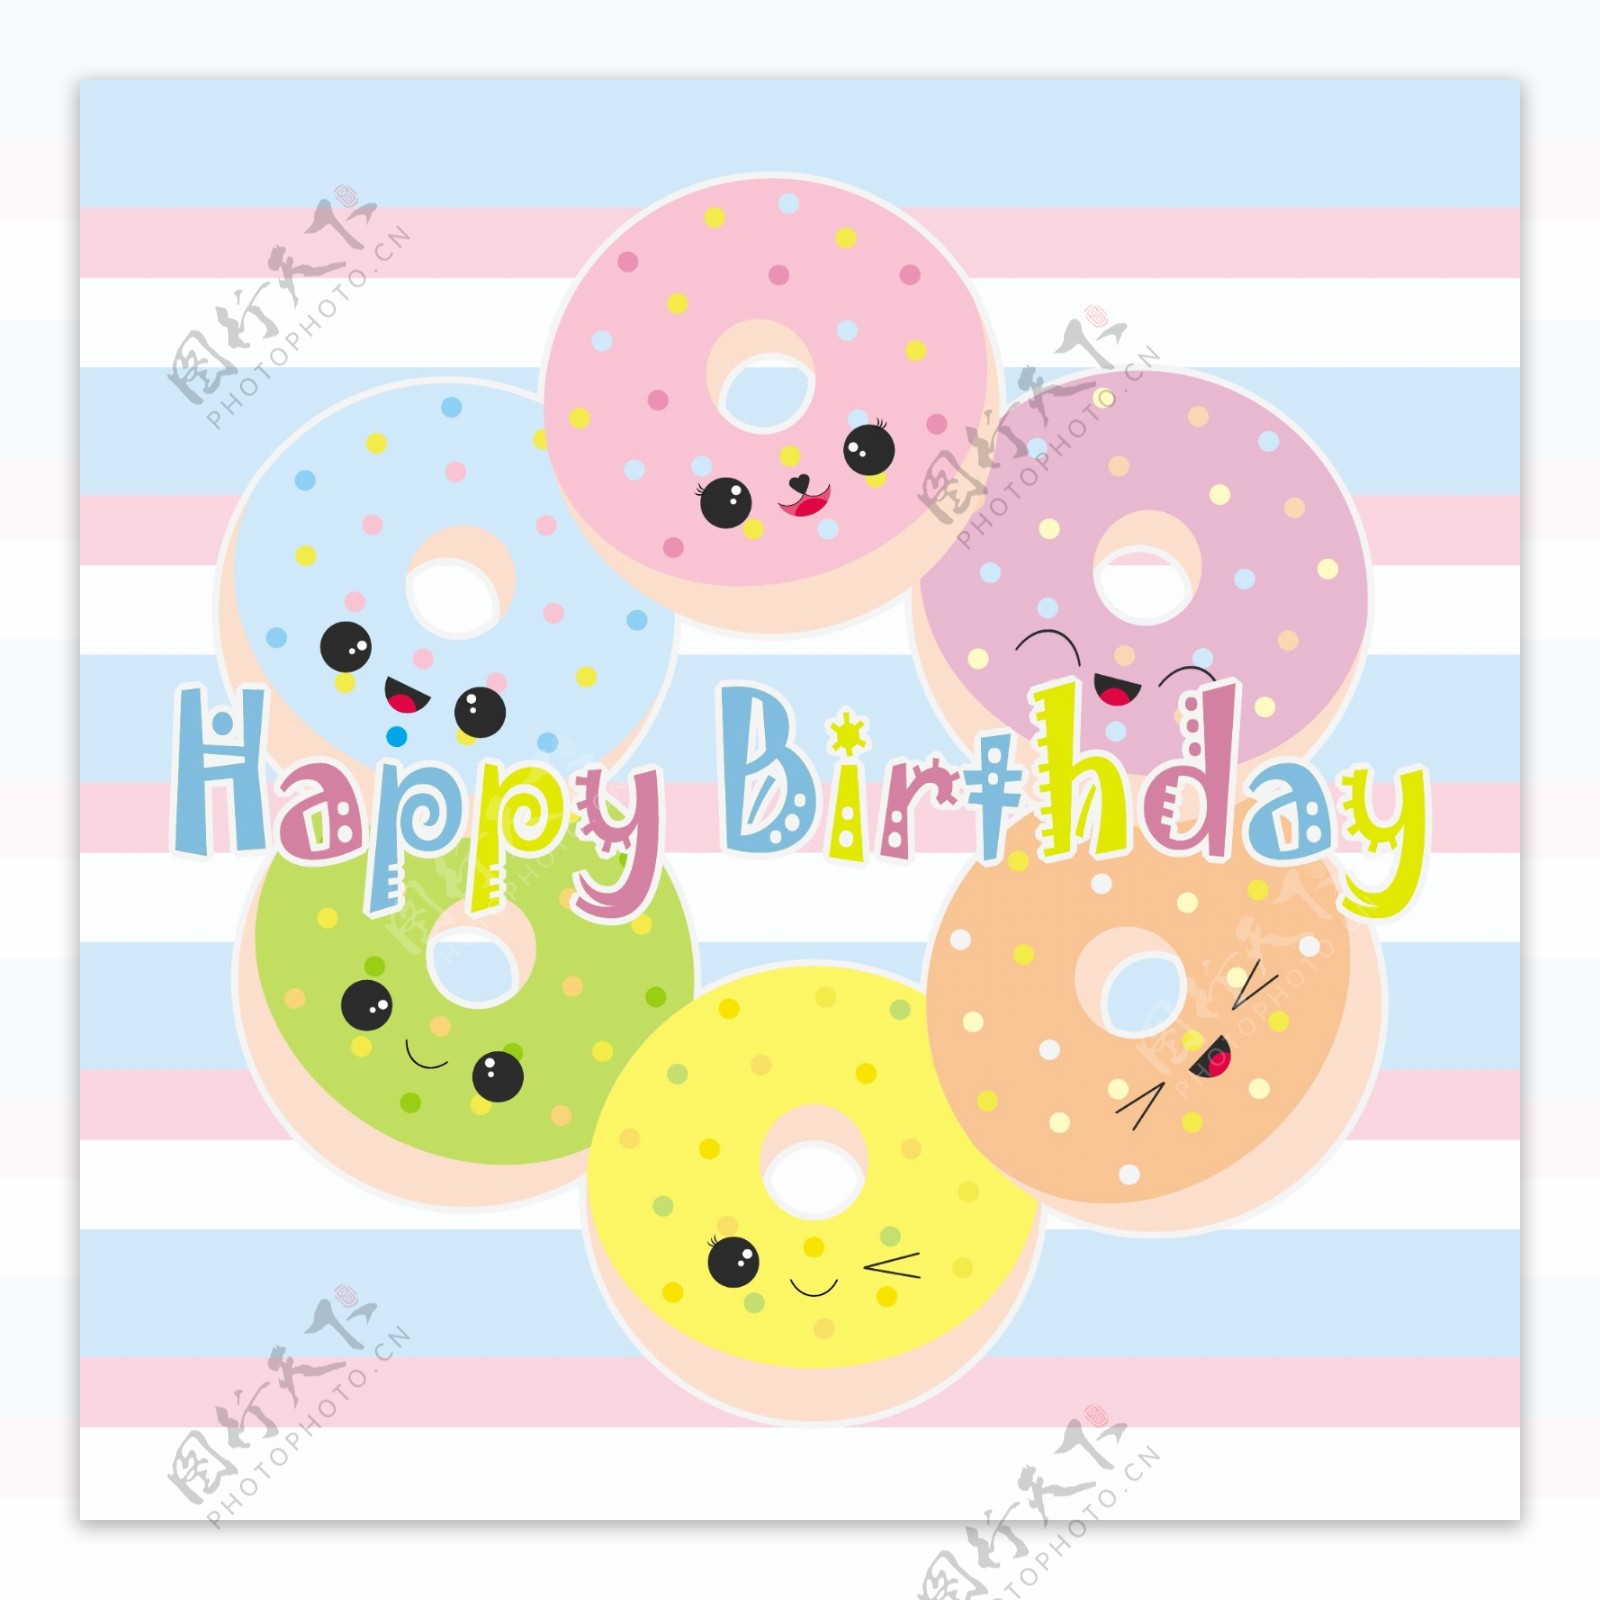 可爱卡通甜甜圈生日快乐条纹背景